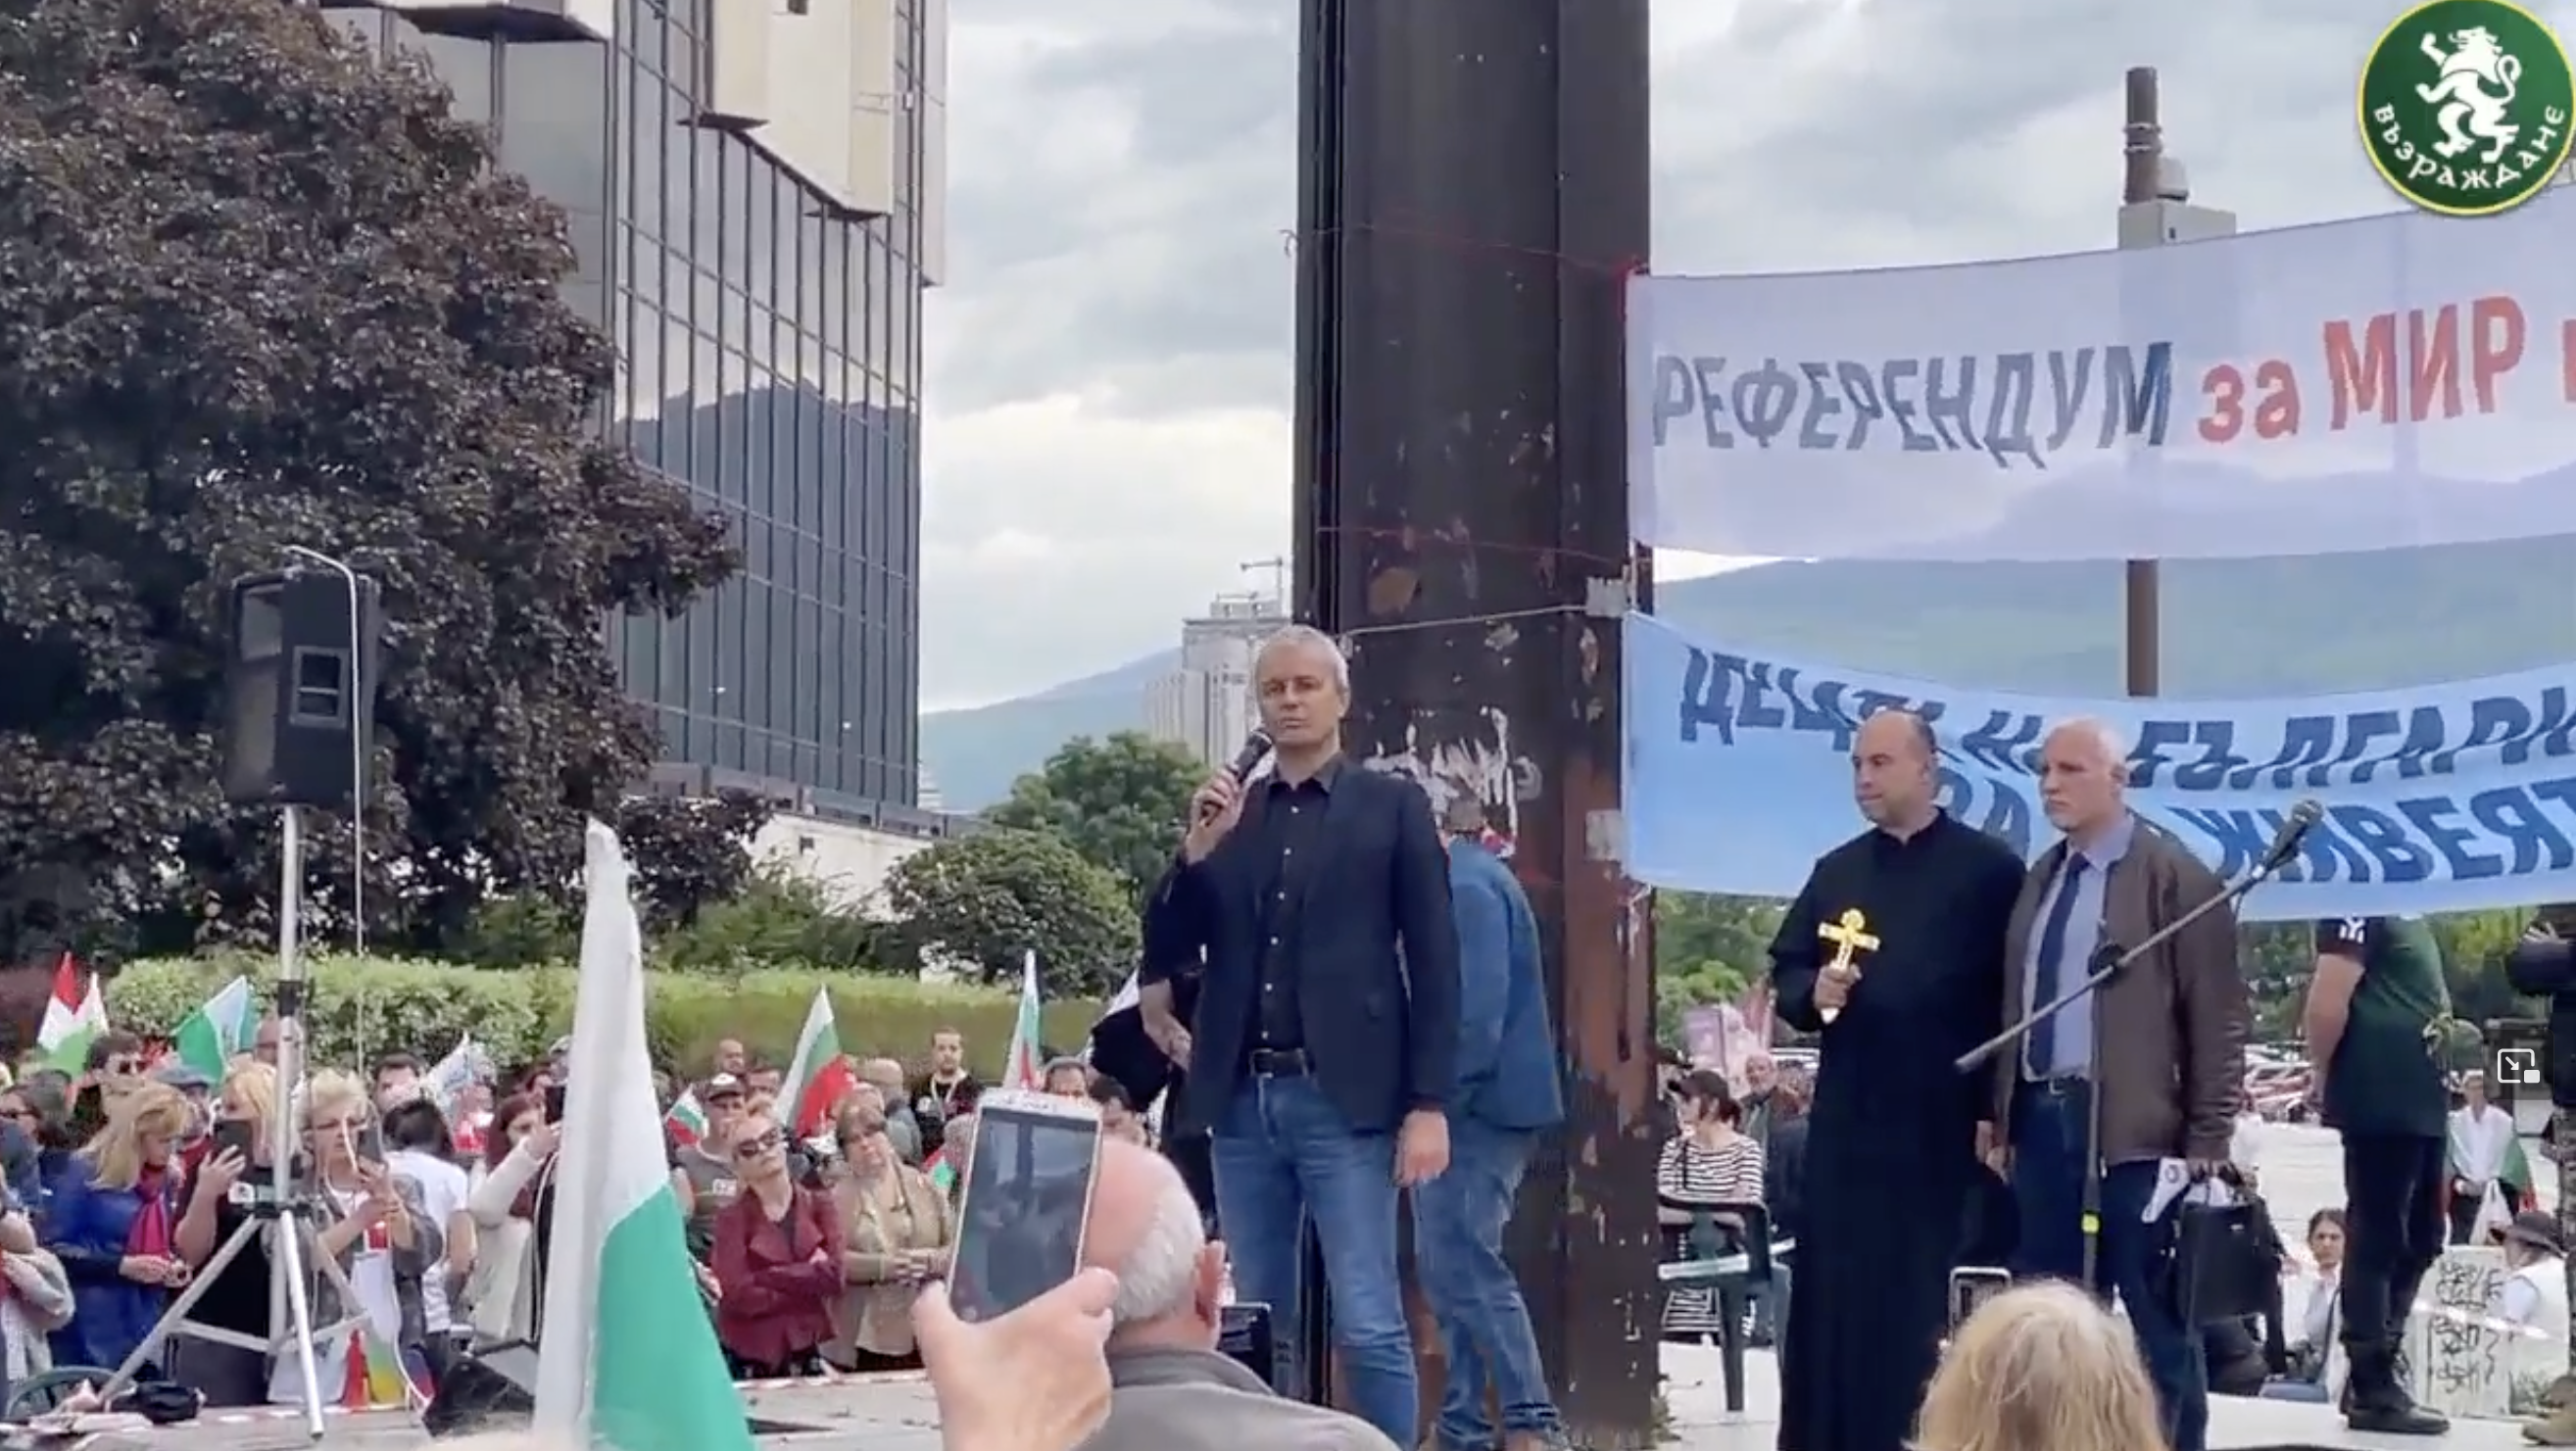 Vazrazhdane leader Kostadin Kostadinov speaking before a crowd in Sofia